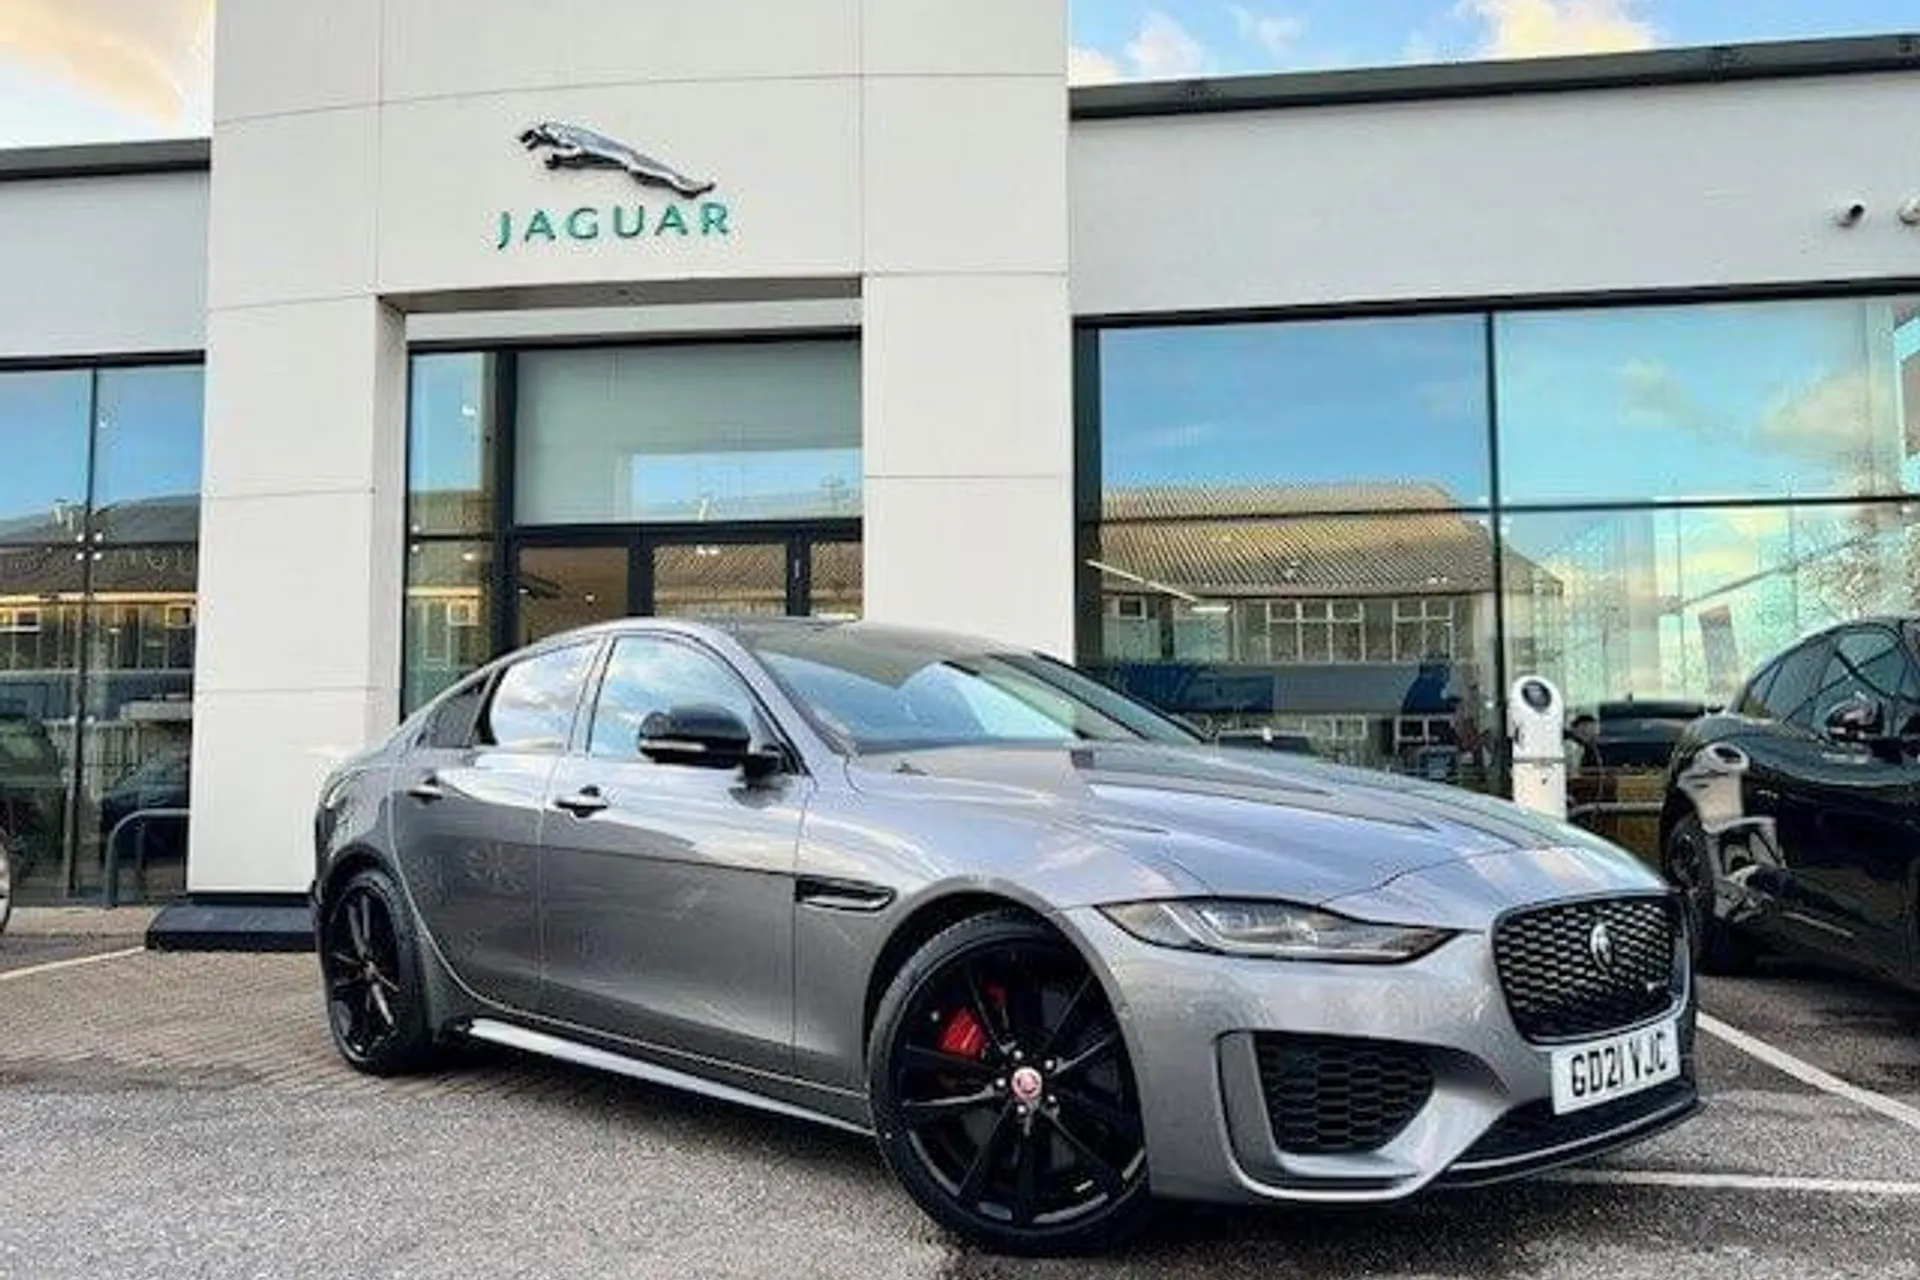 Jaguar XE focused image